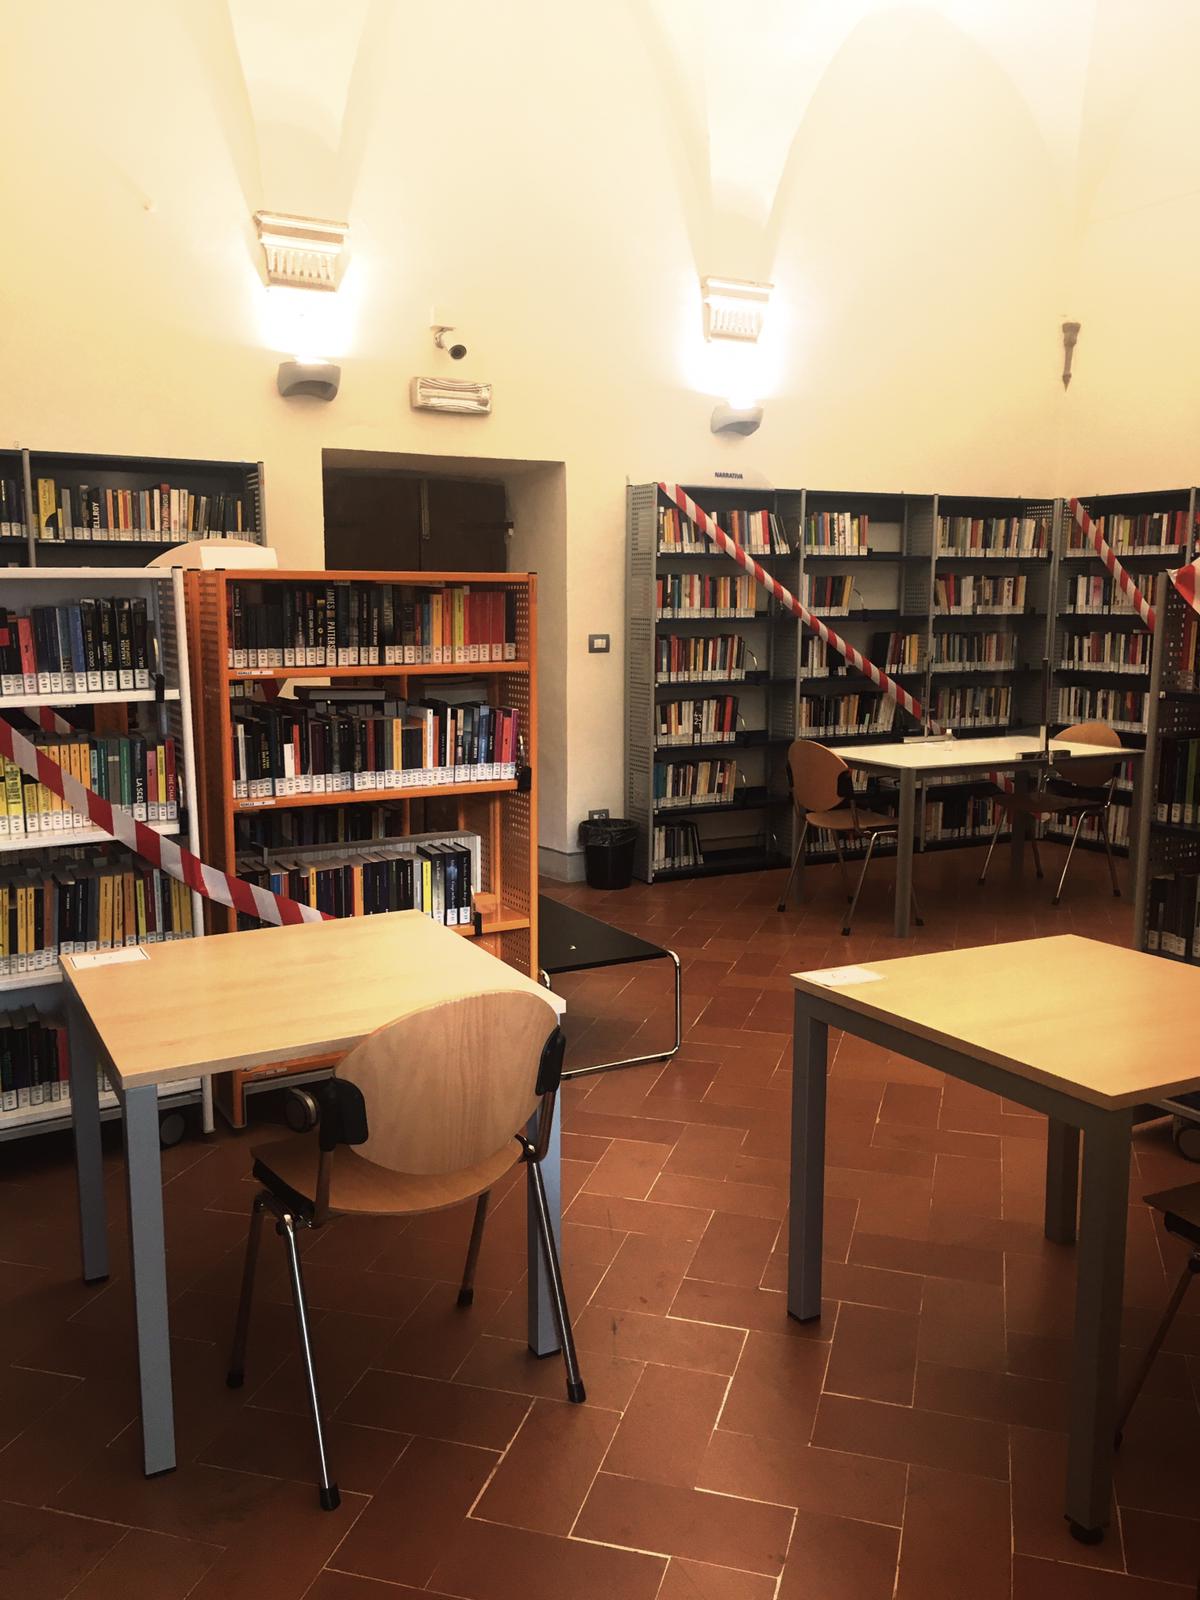 Sale interne di lettura, riapertura sperimentale dal 3 agosto. La Biblioteca comunale di Sansepolcro ripristina anche questo servizio